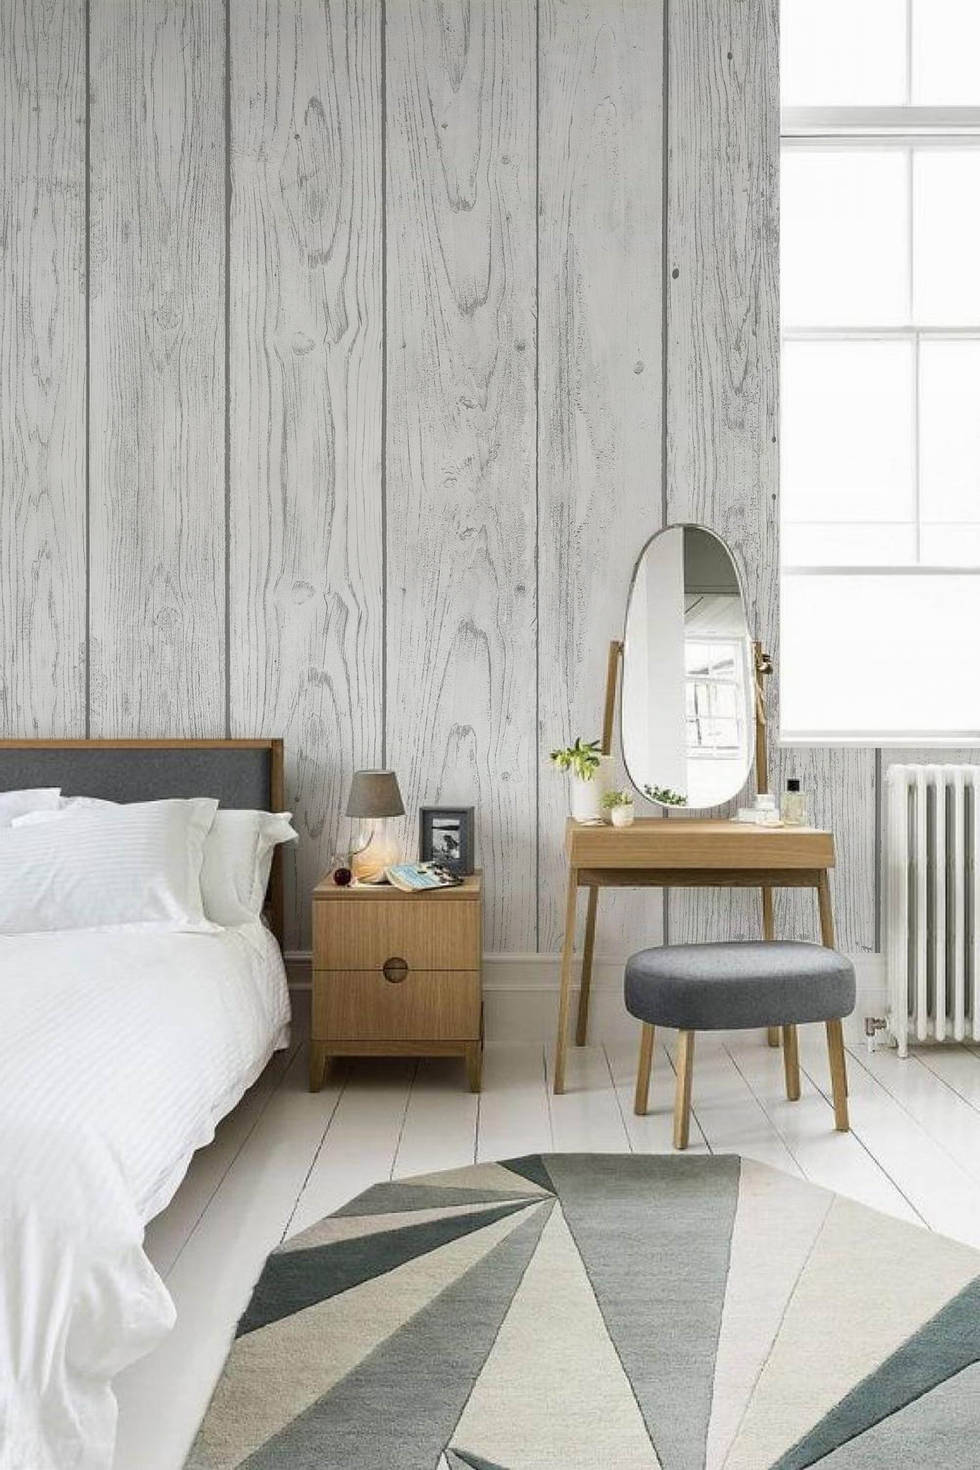 12 модных идей для дизайна стен в спальне- фотографии
				